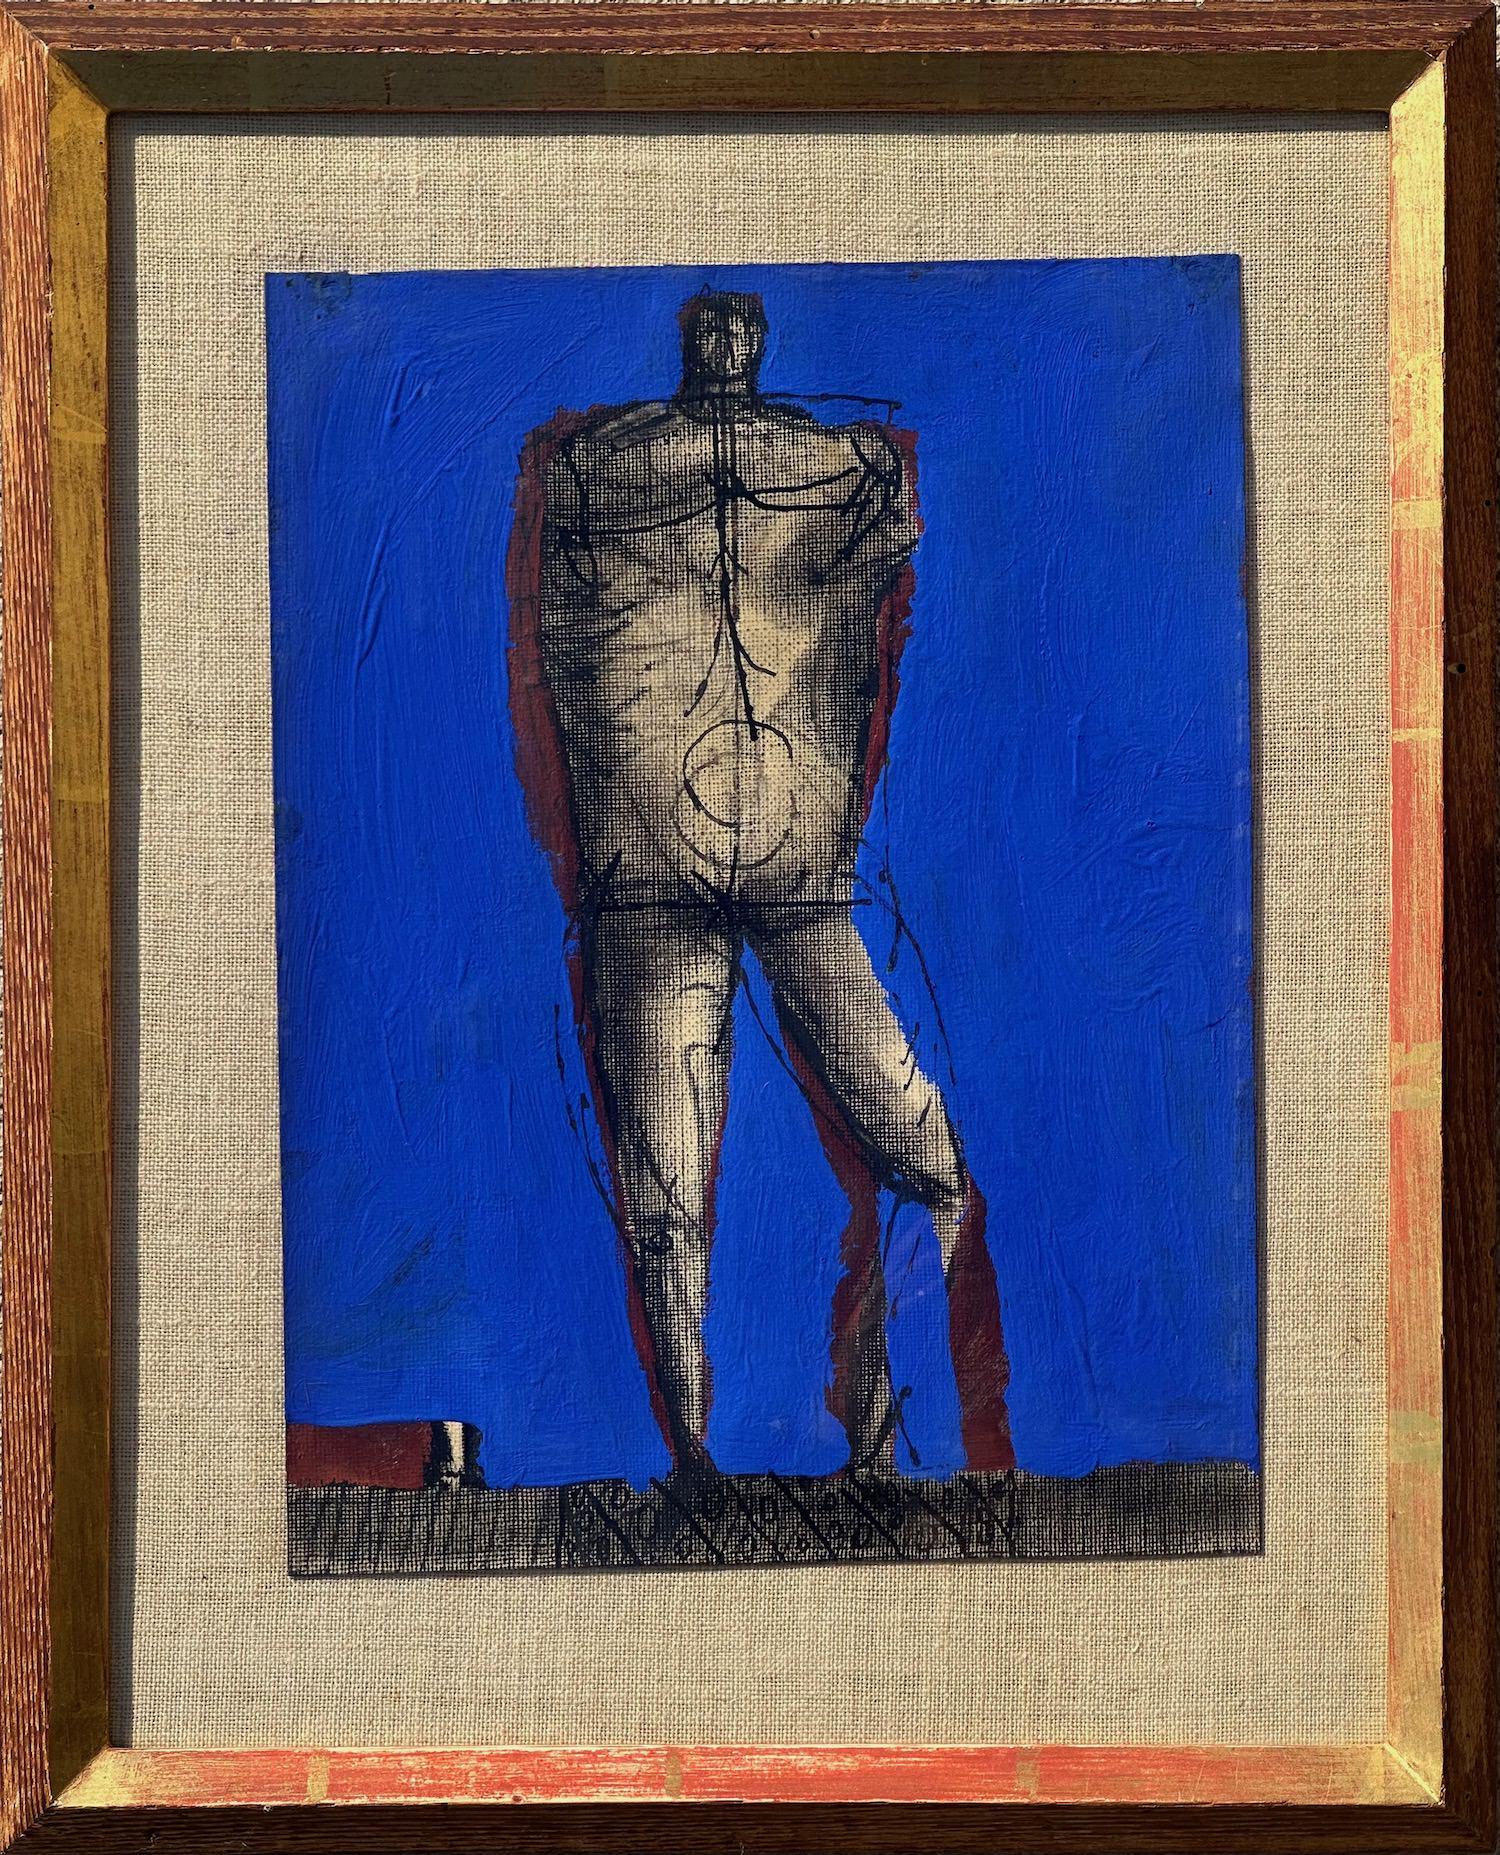 Mannequin nu debout, peinture expressionniste figurative du milieu du siècle dernier, artiste new-yorkais - Painting de Joseph Glasco